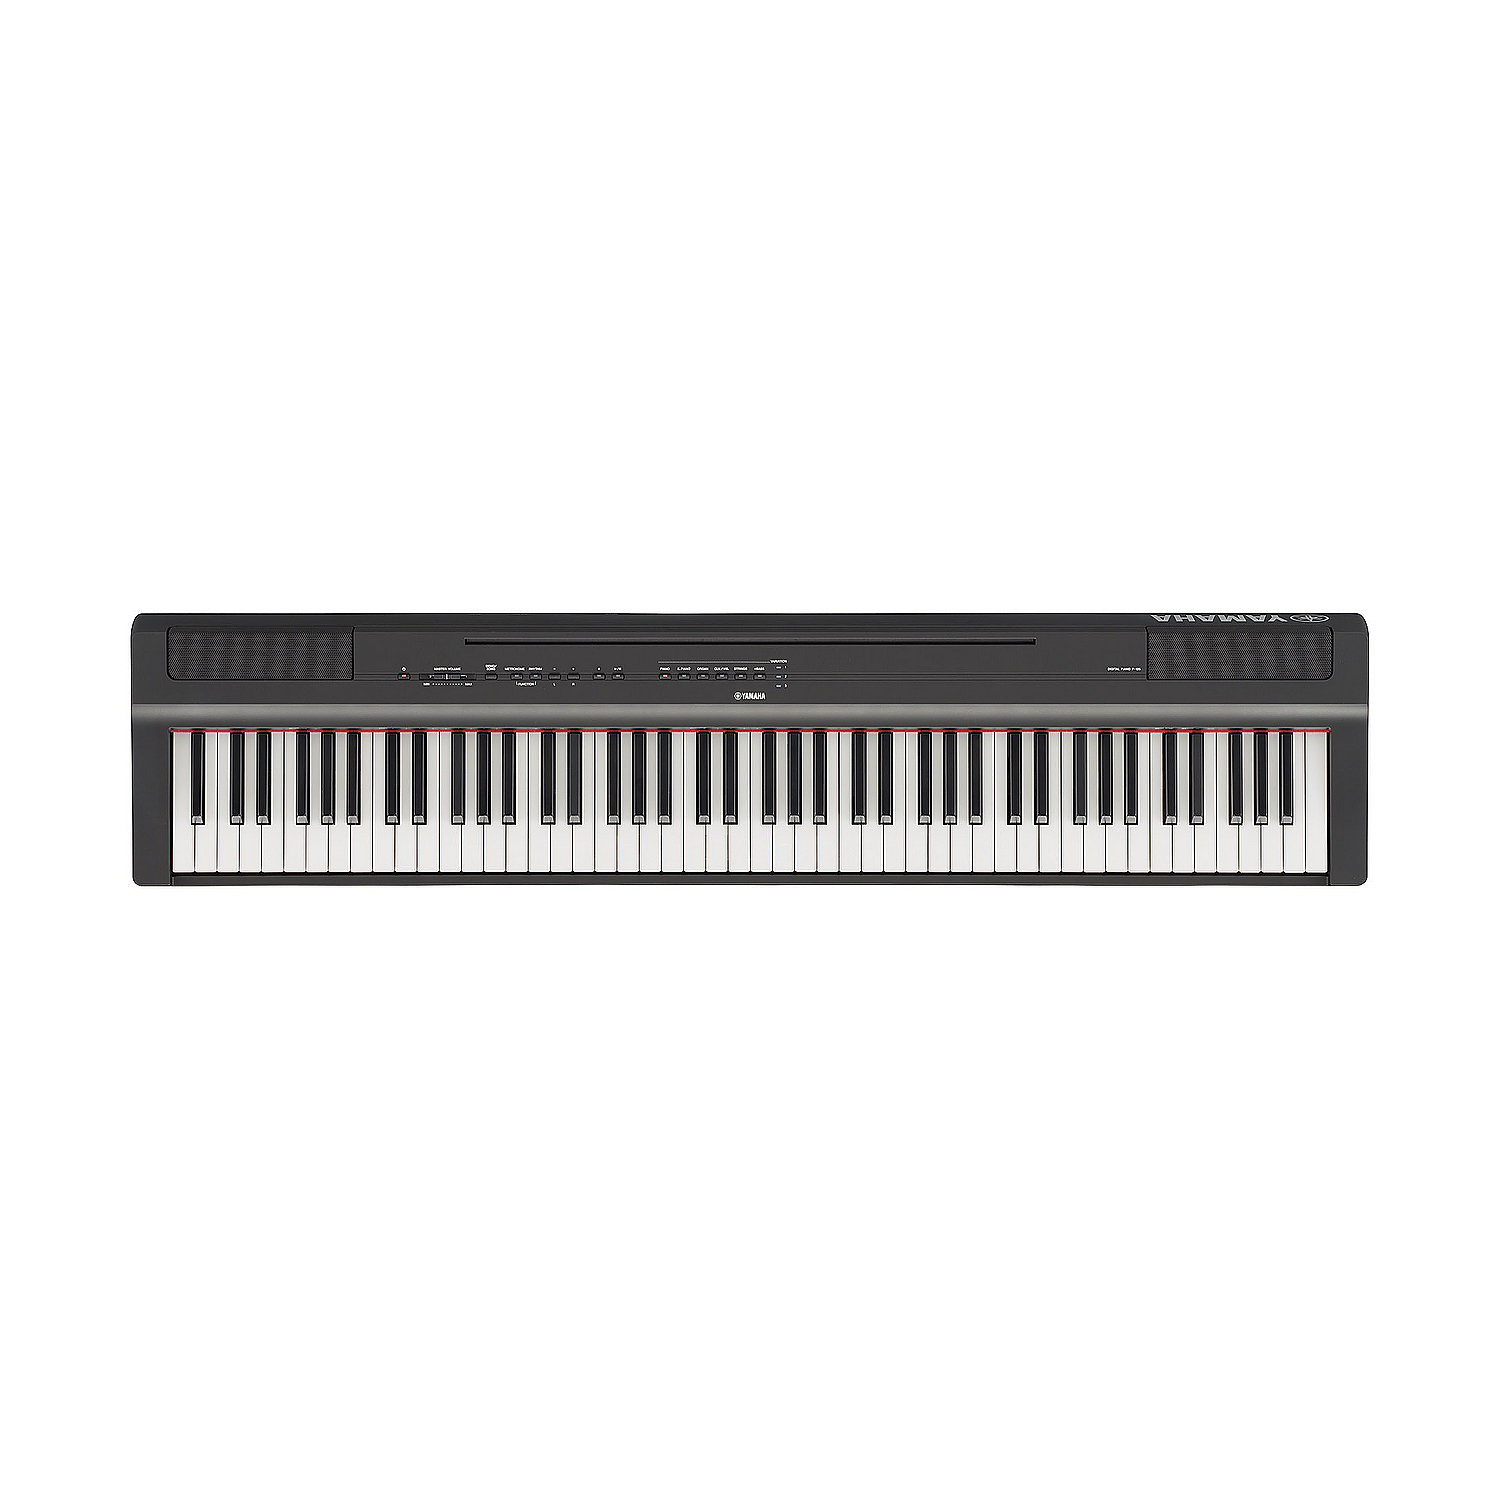 YAMAHA P-125B - цифр.пианино 88кл. GHS, 24 тембра, 192 полиф., цвет чёрный (без стула и стойки), БП